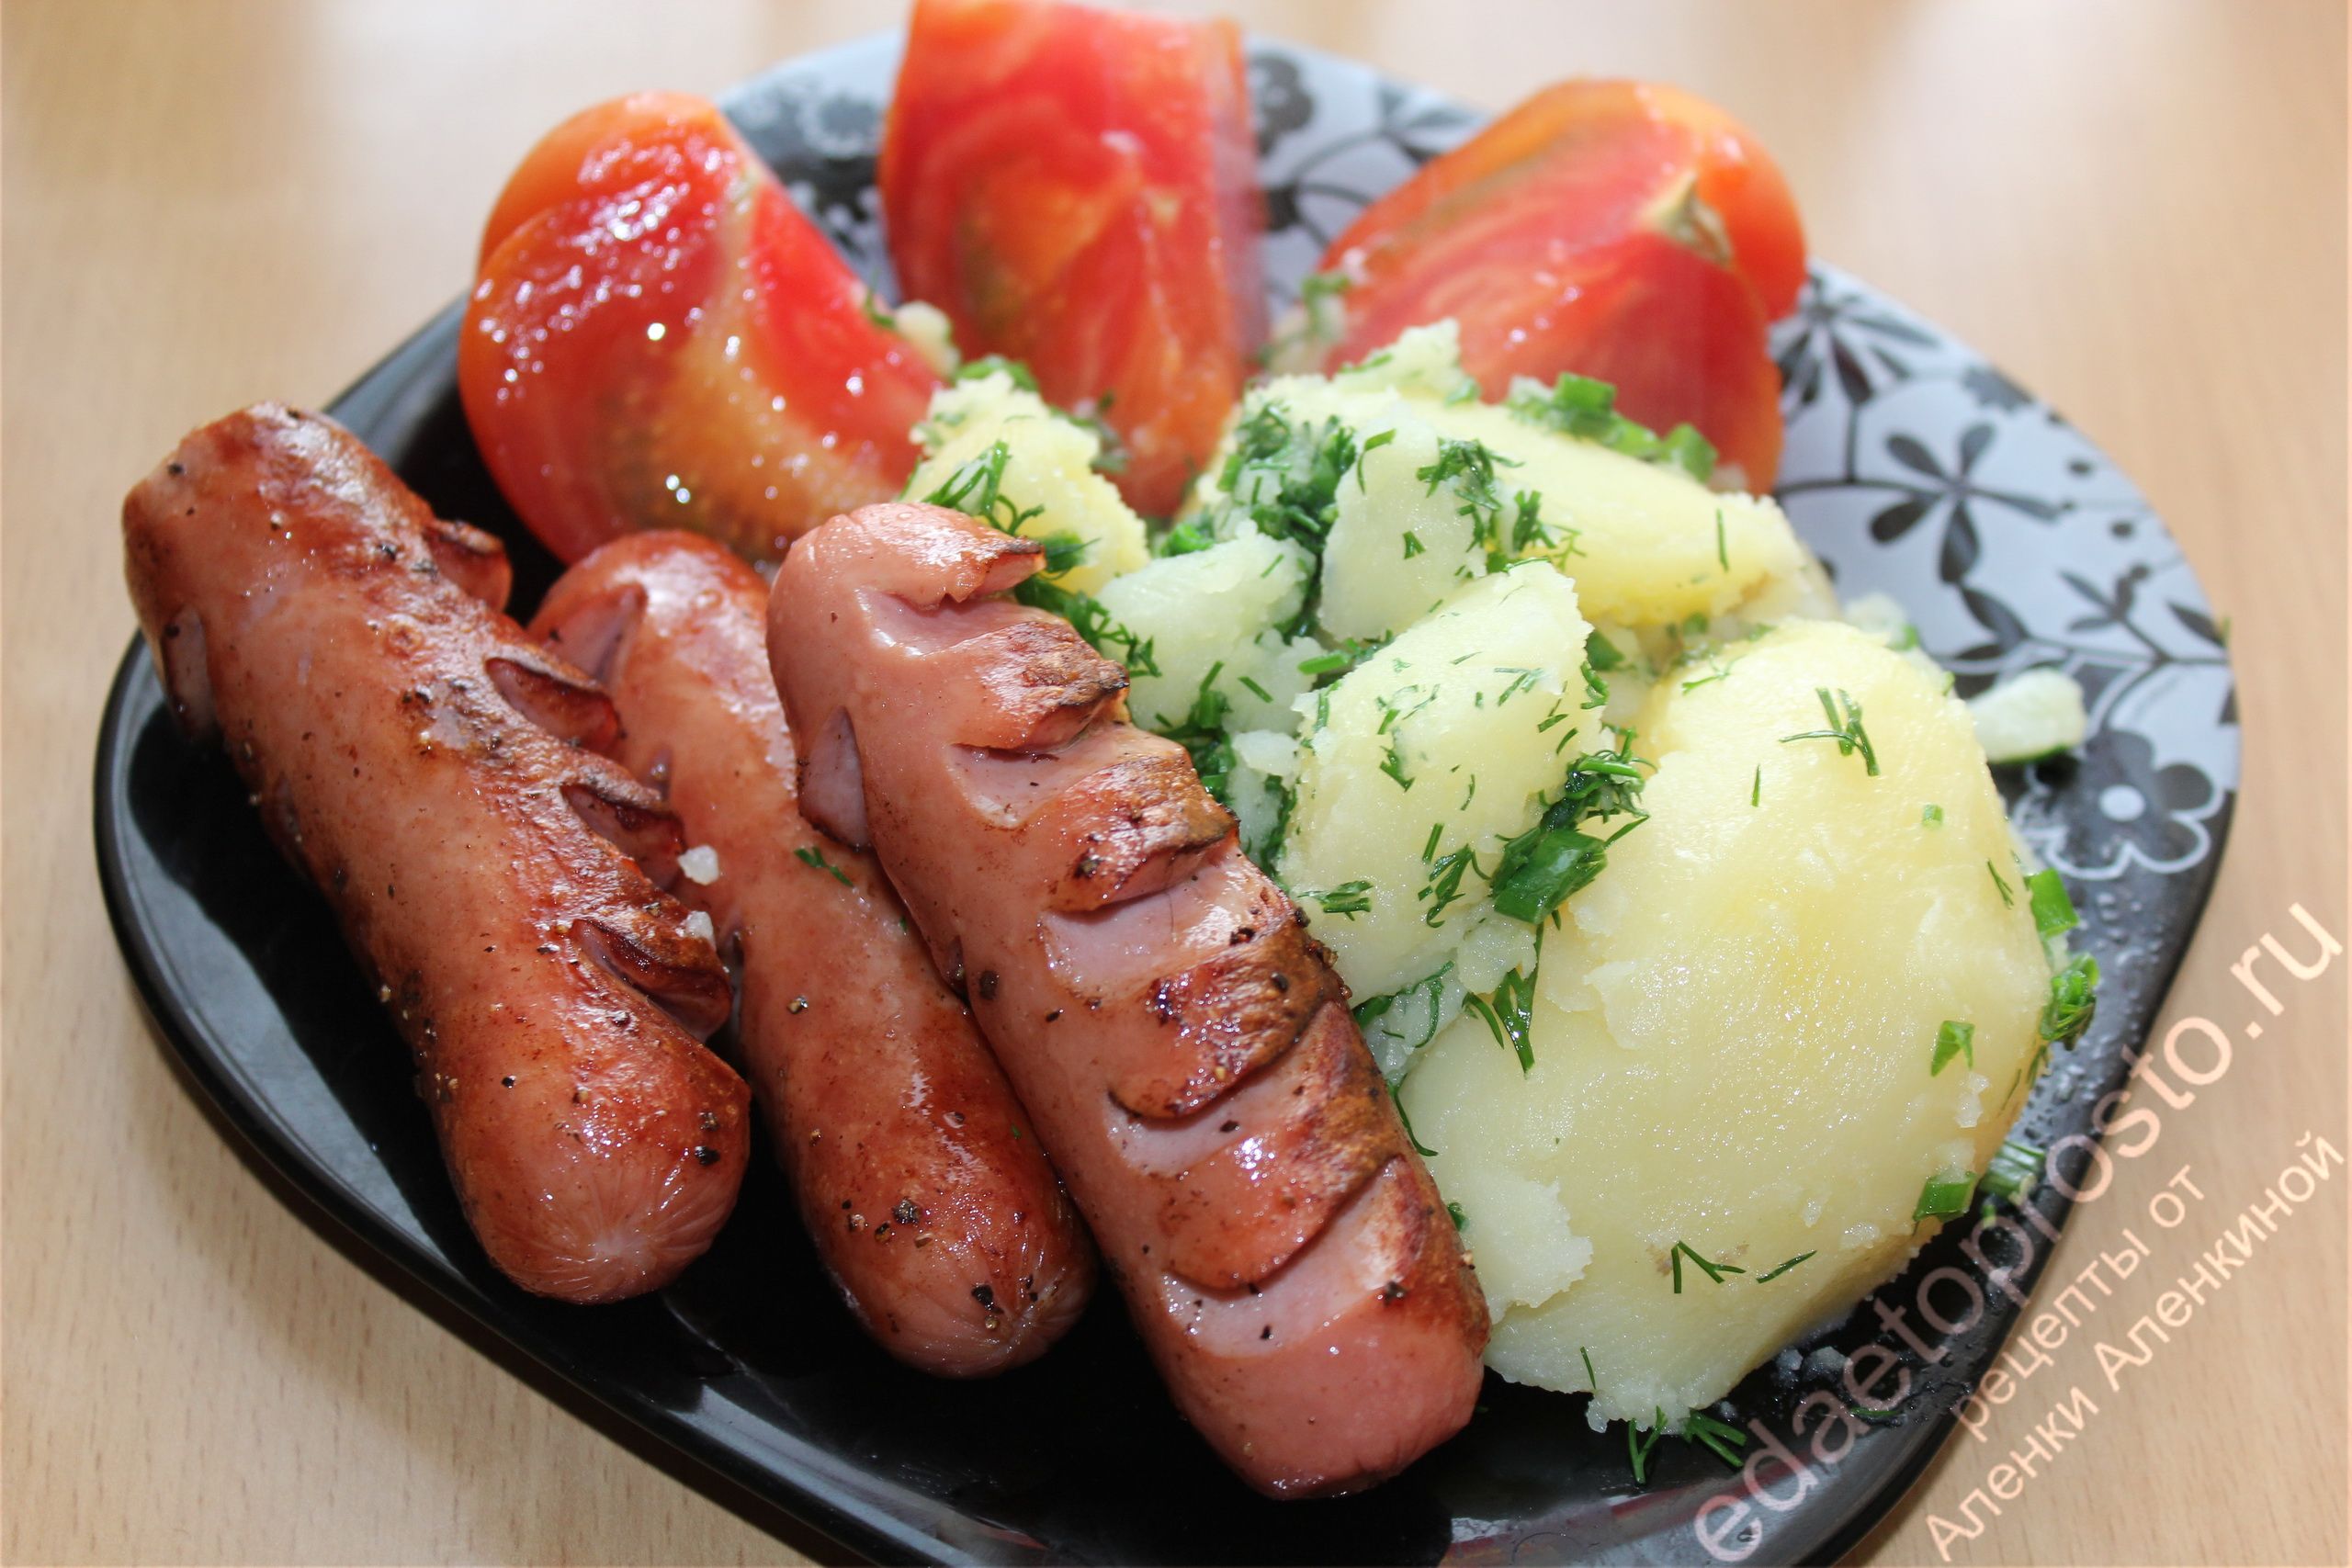 фото вареного картофеля с жареными сосисками и зеленью